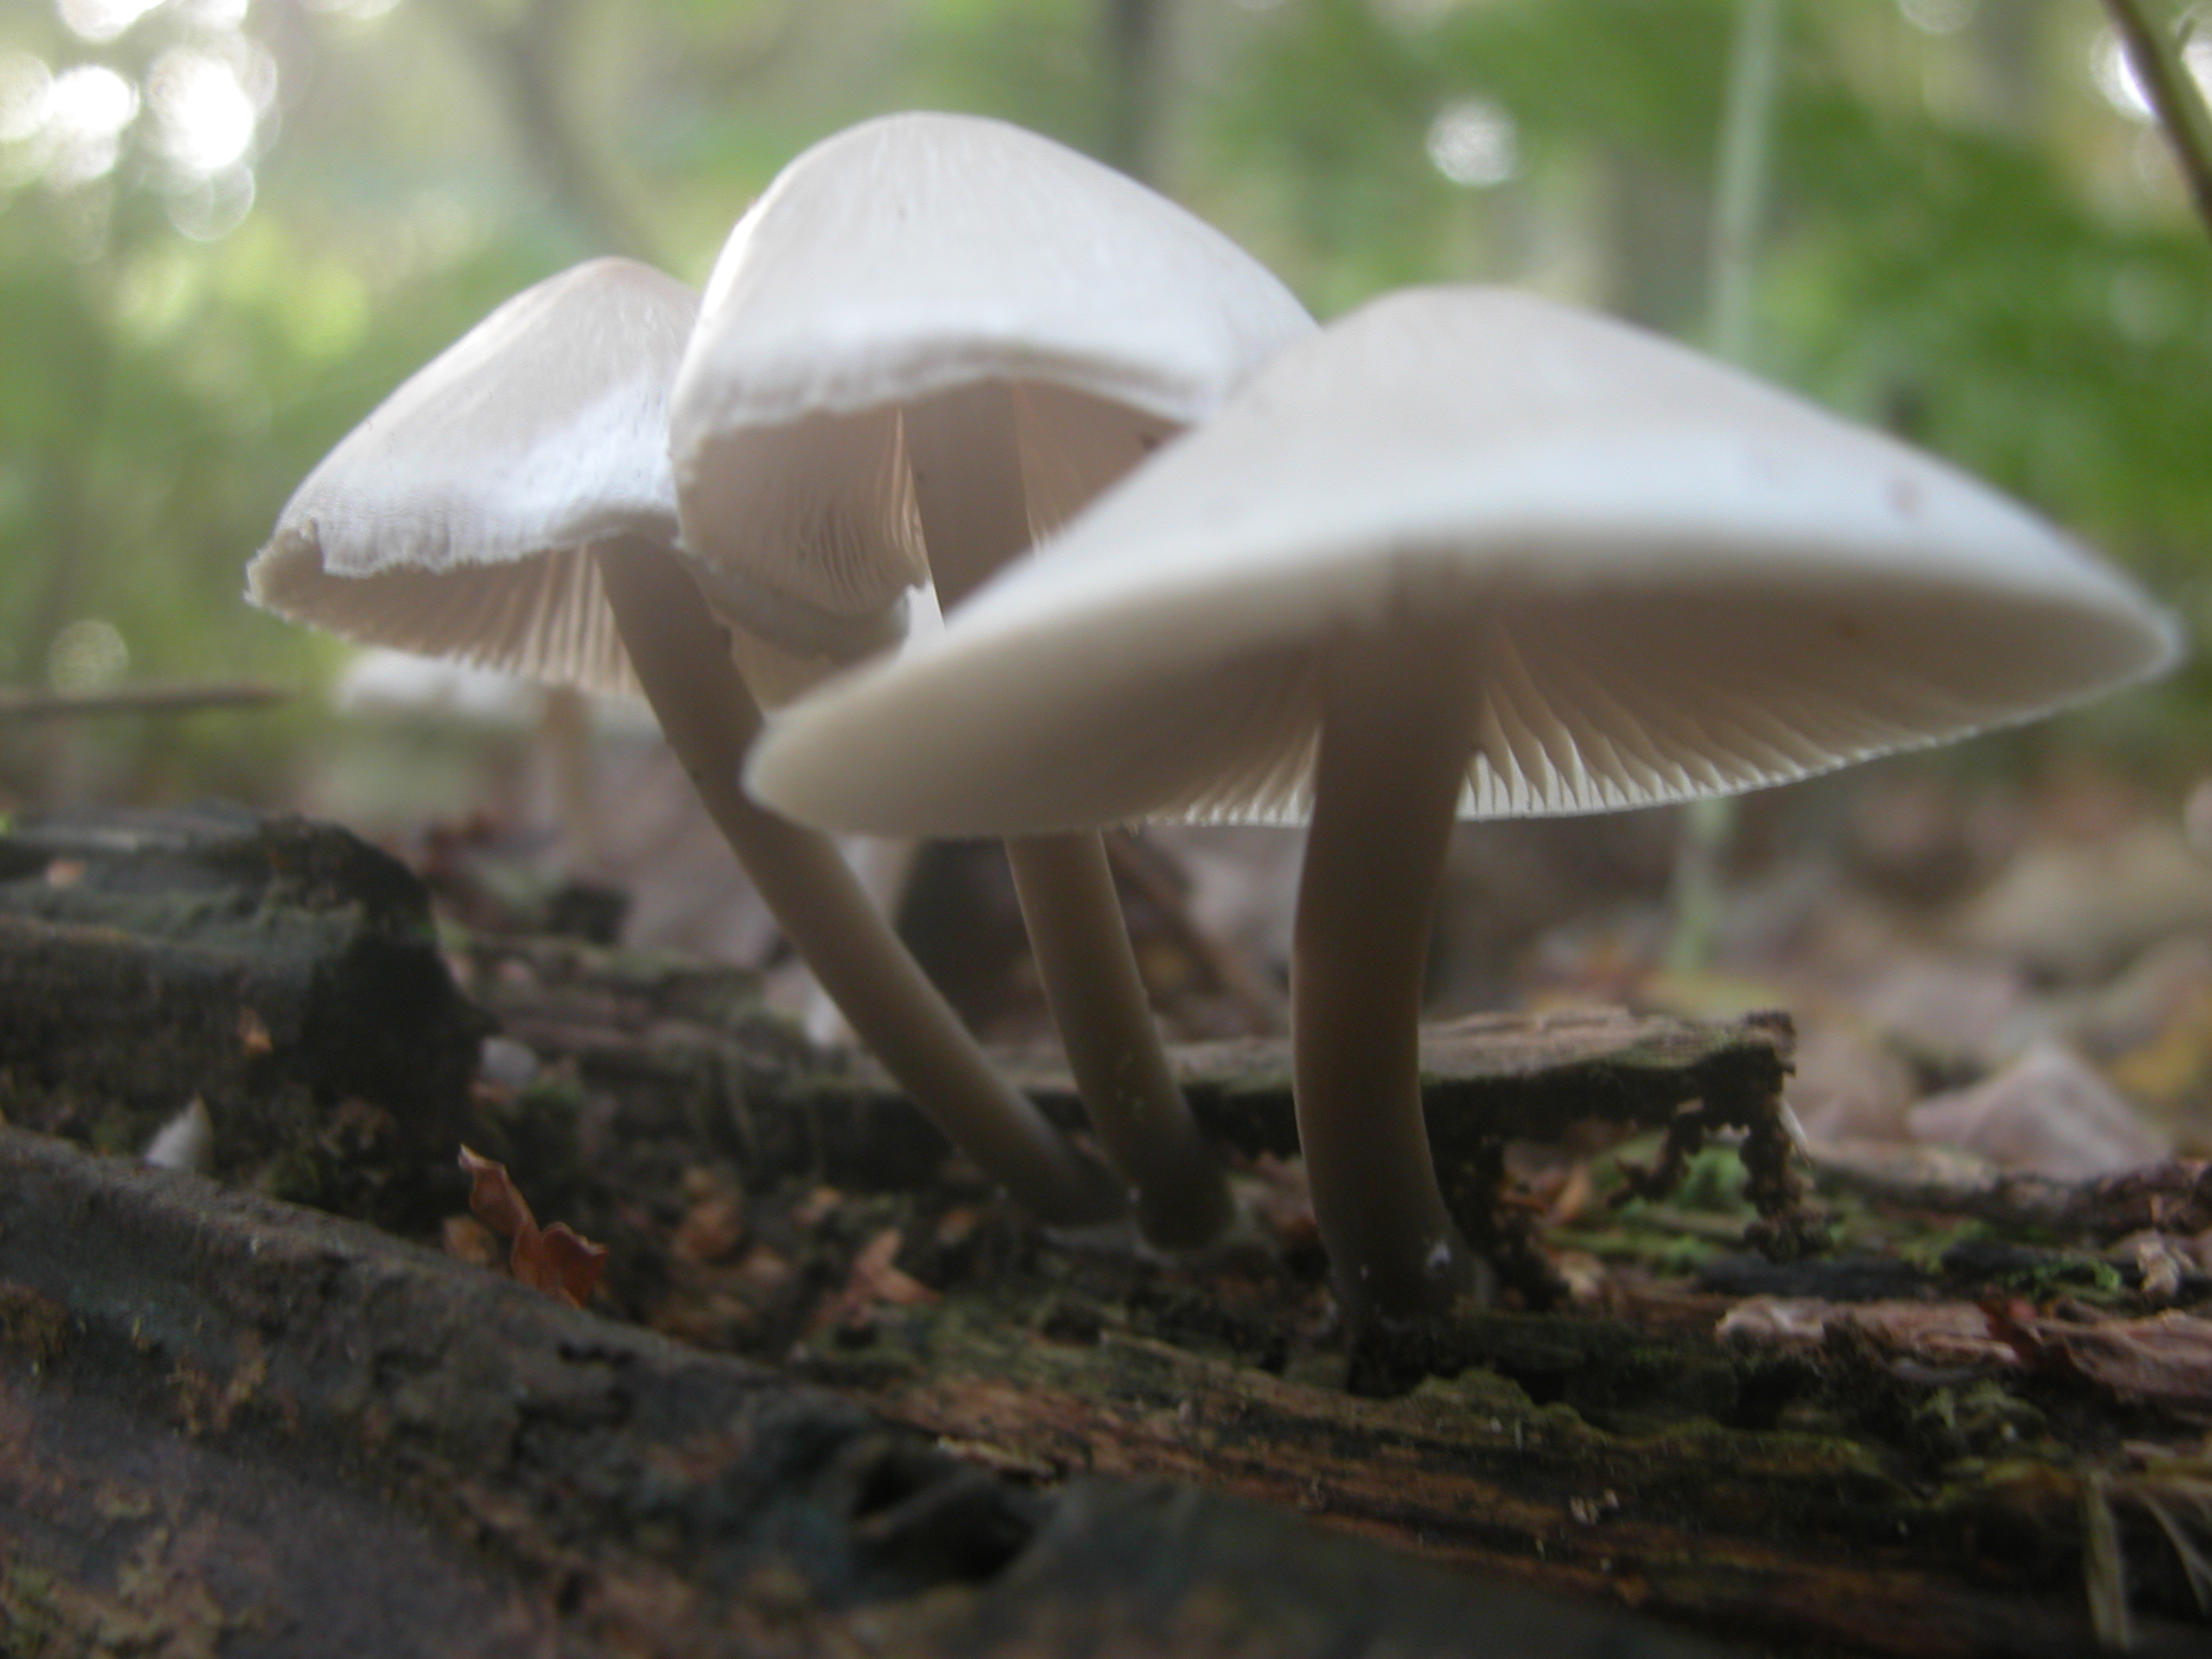 mushroom mushrooms shroom shrooms nature elves fungus forest floor